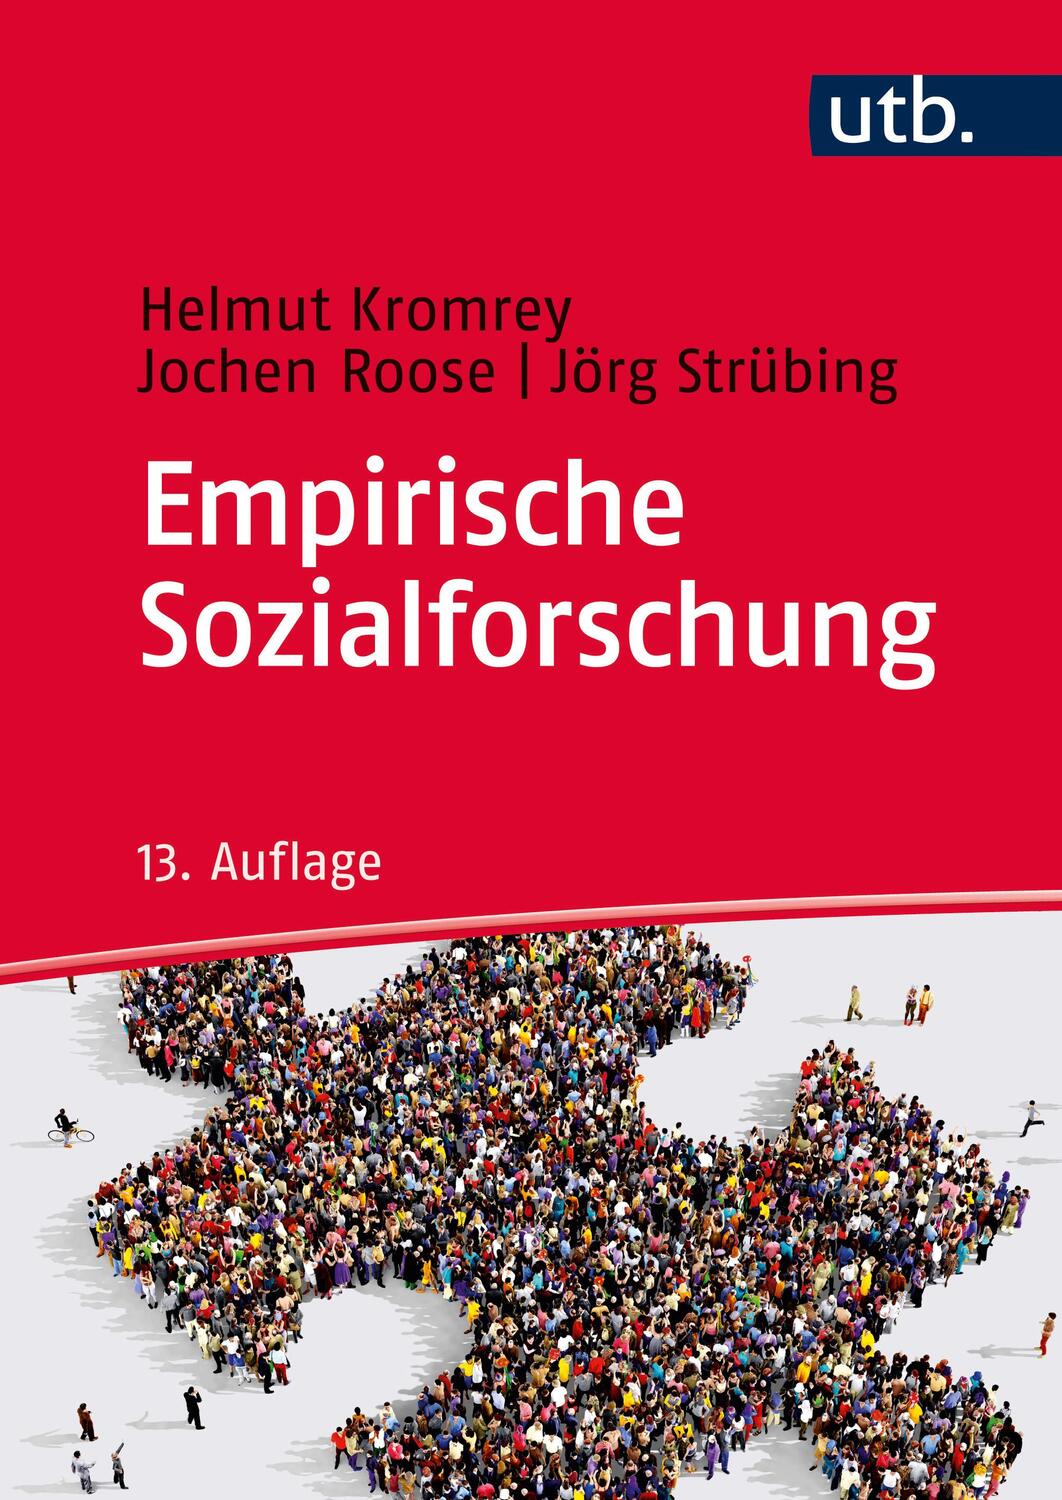 Empirische Sozialforschung - Kromrey, Helmut